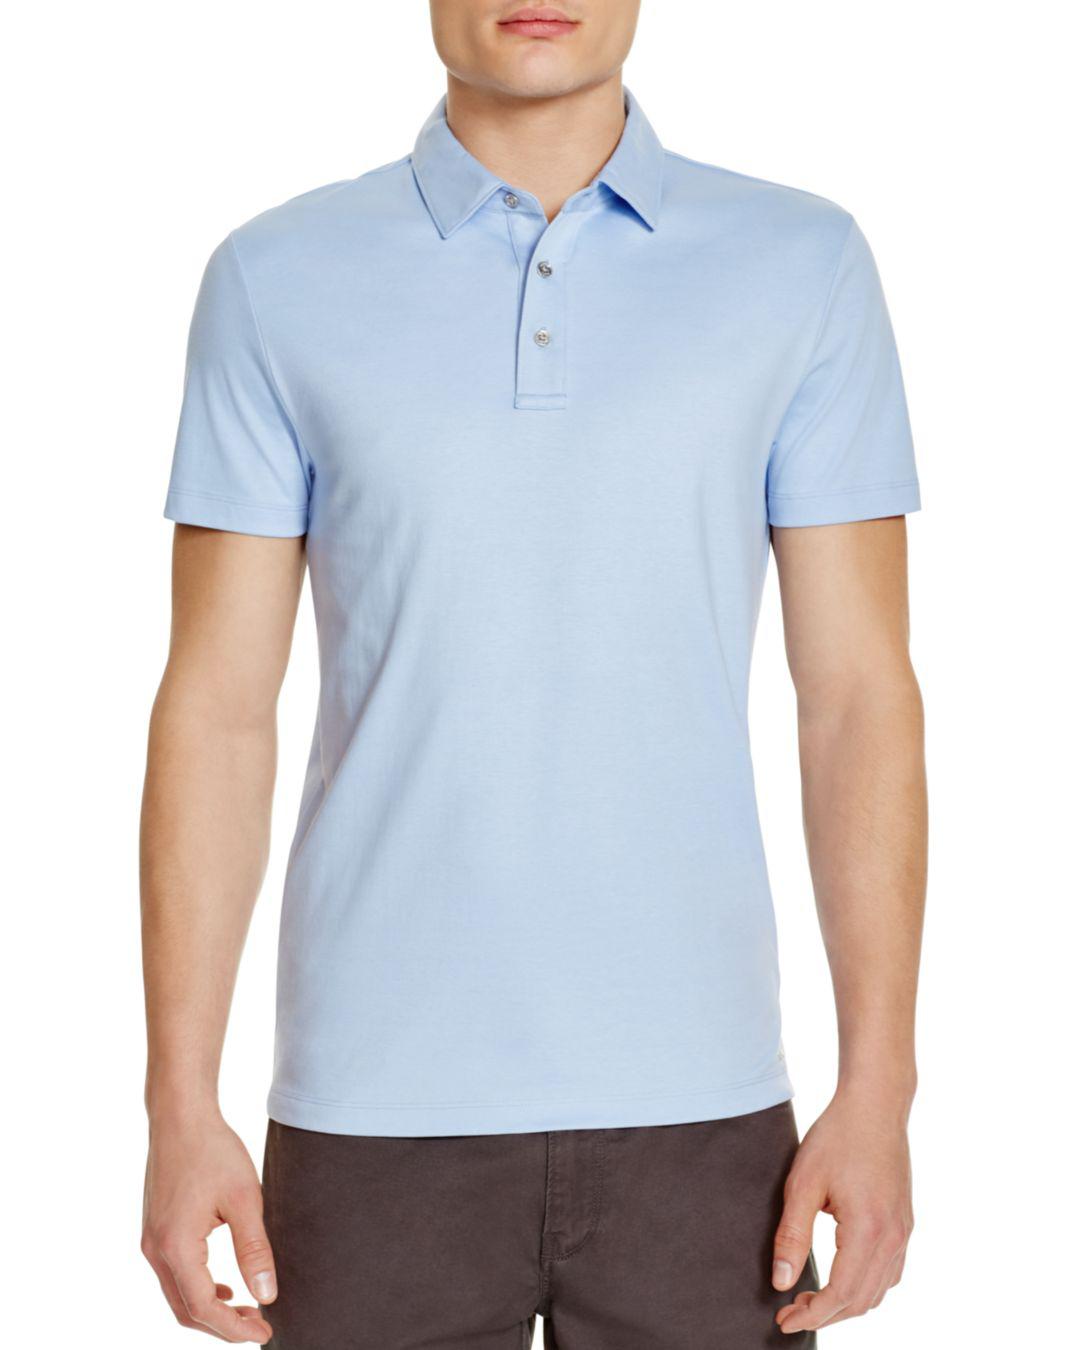 Michael Kors Sleek Slim Fit Polo Shirt in Blue for Men - Lyst